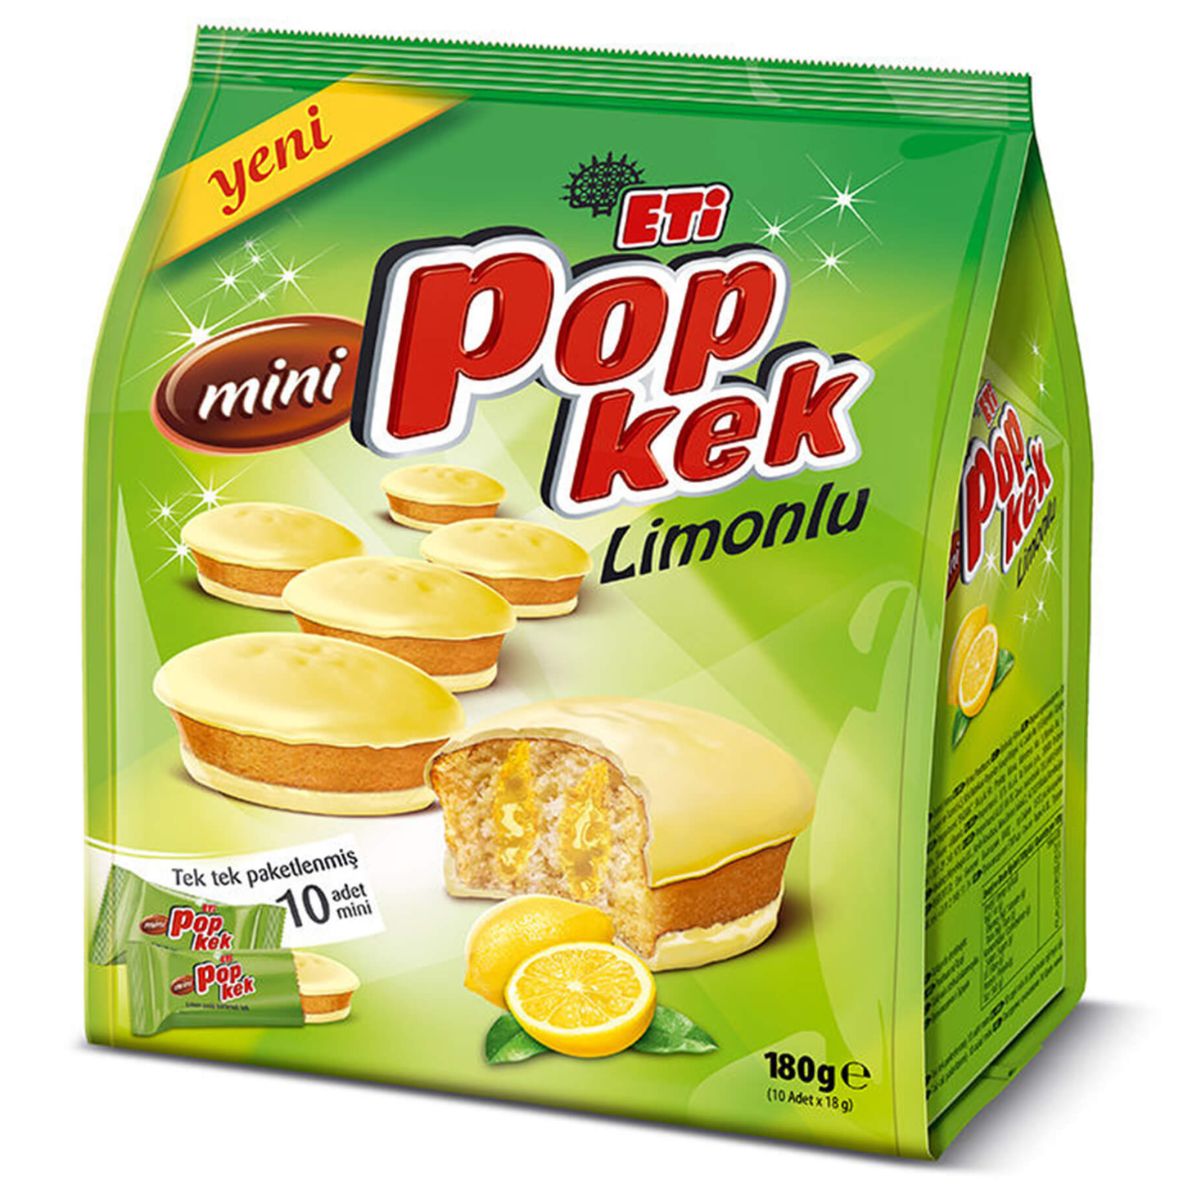 A bag of Eti - Popkek With Lemon Mini Cakes - 180g.